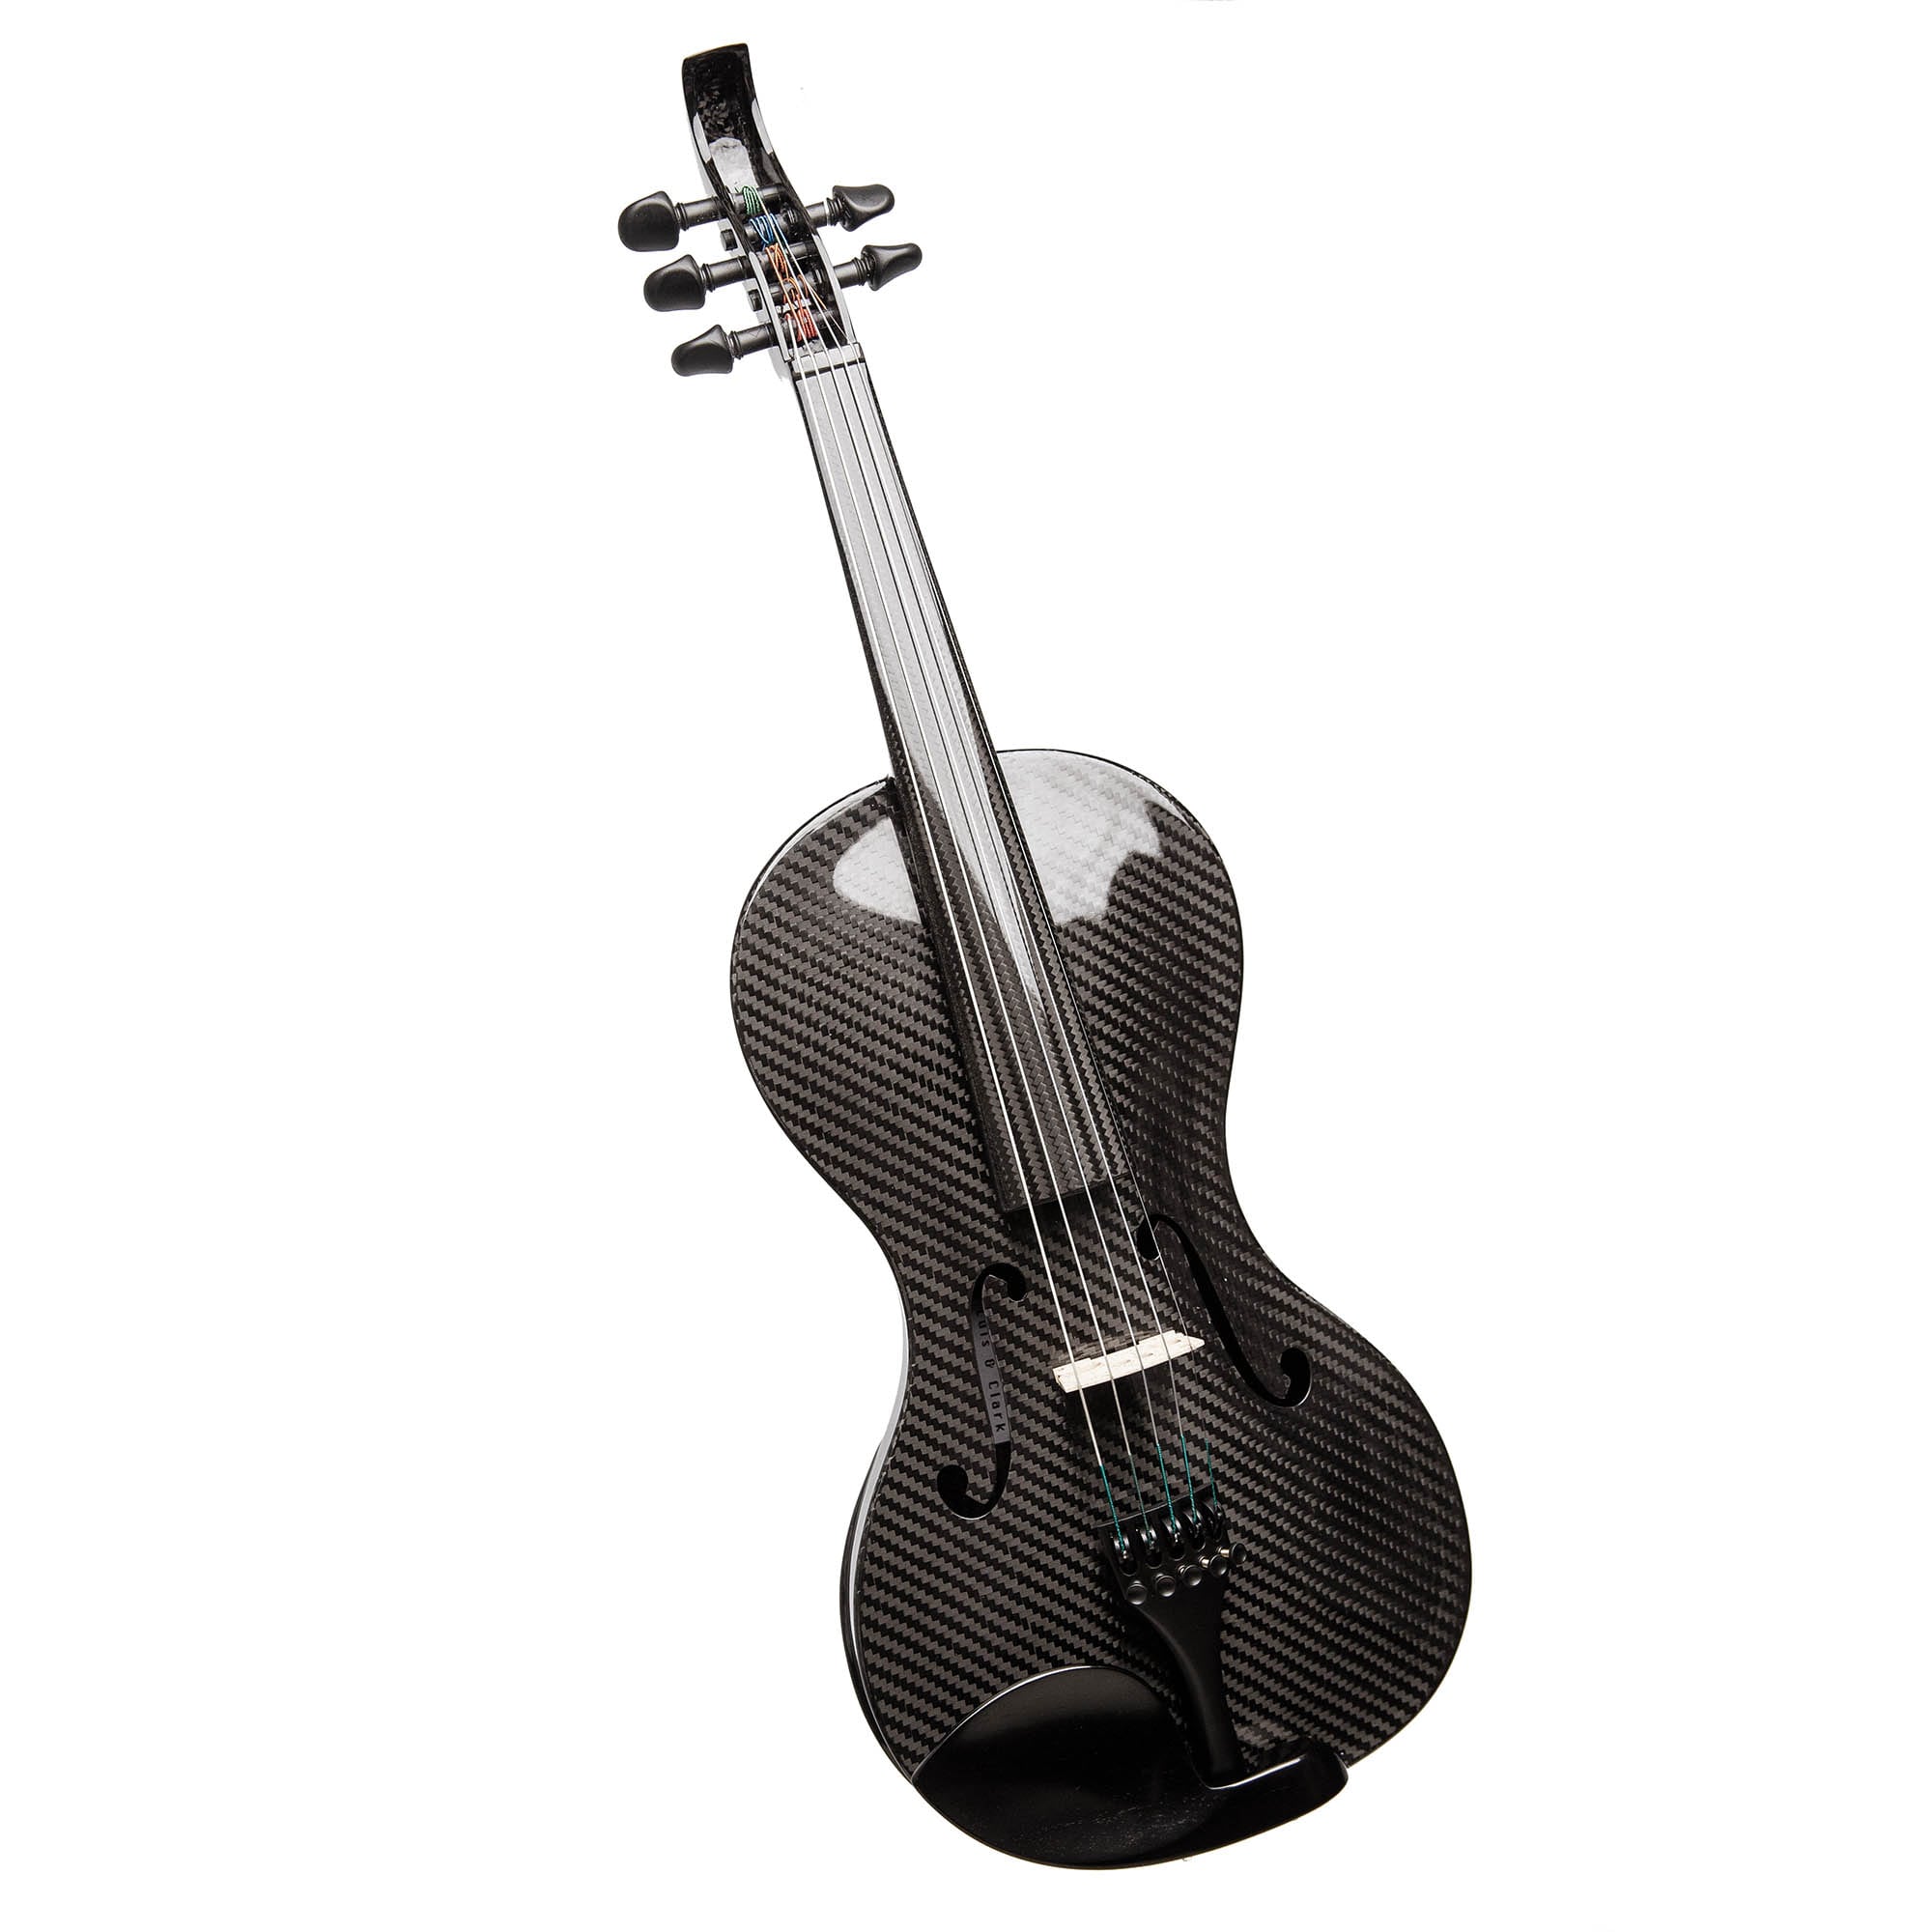 Violin instruments. Yamaha 5 струн скрипка. Скрипка Ямаха 5 струн. Скрипка карбон. Скрипка дешевая.